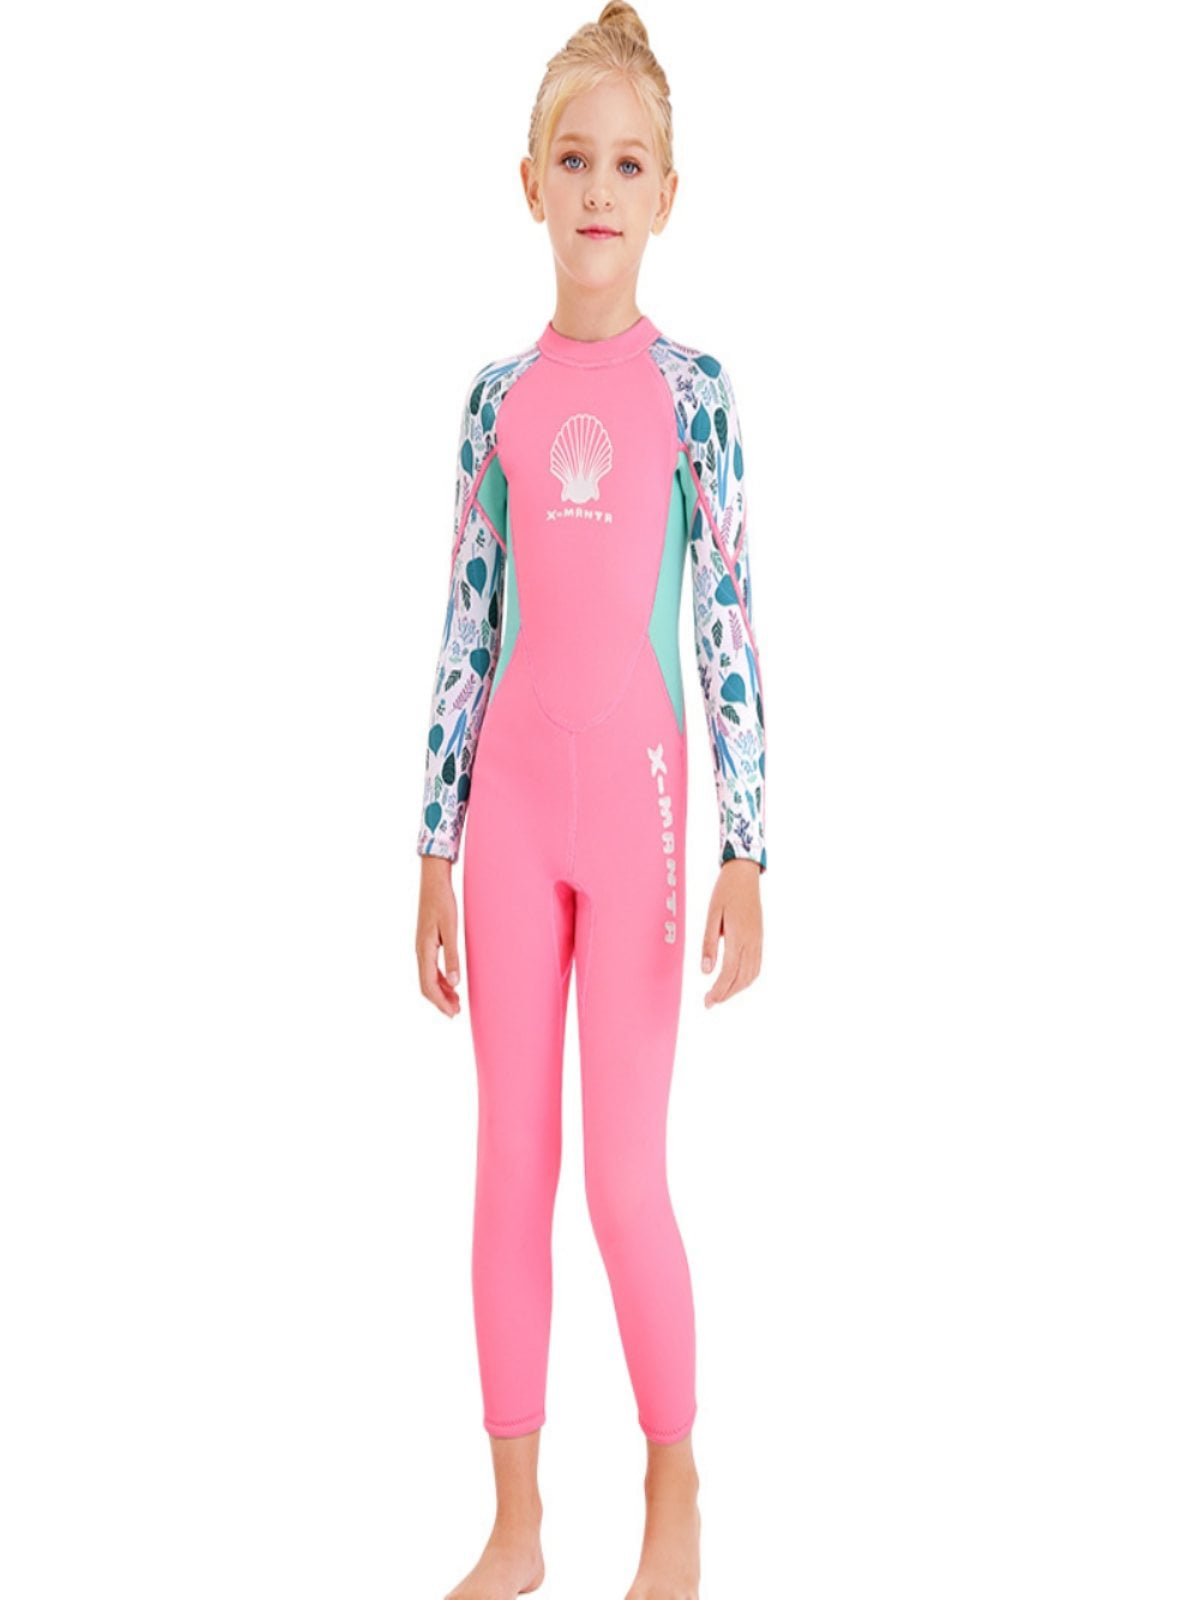 Details about   Women Lady Diving Tops+Pants Set Scuba Surf Snorkeling Surf Diving Suit Wetsuits 